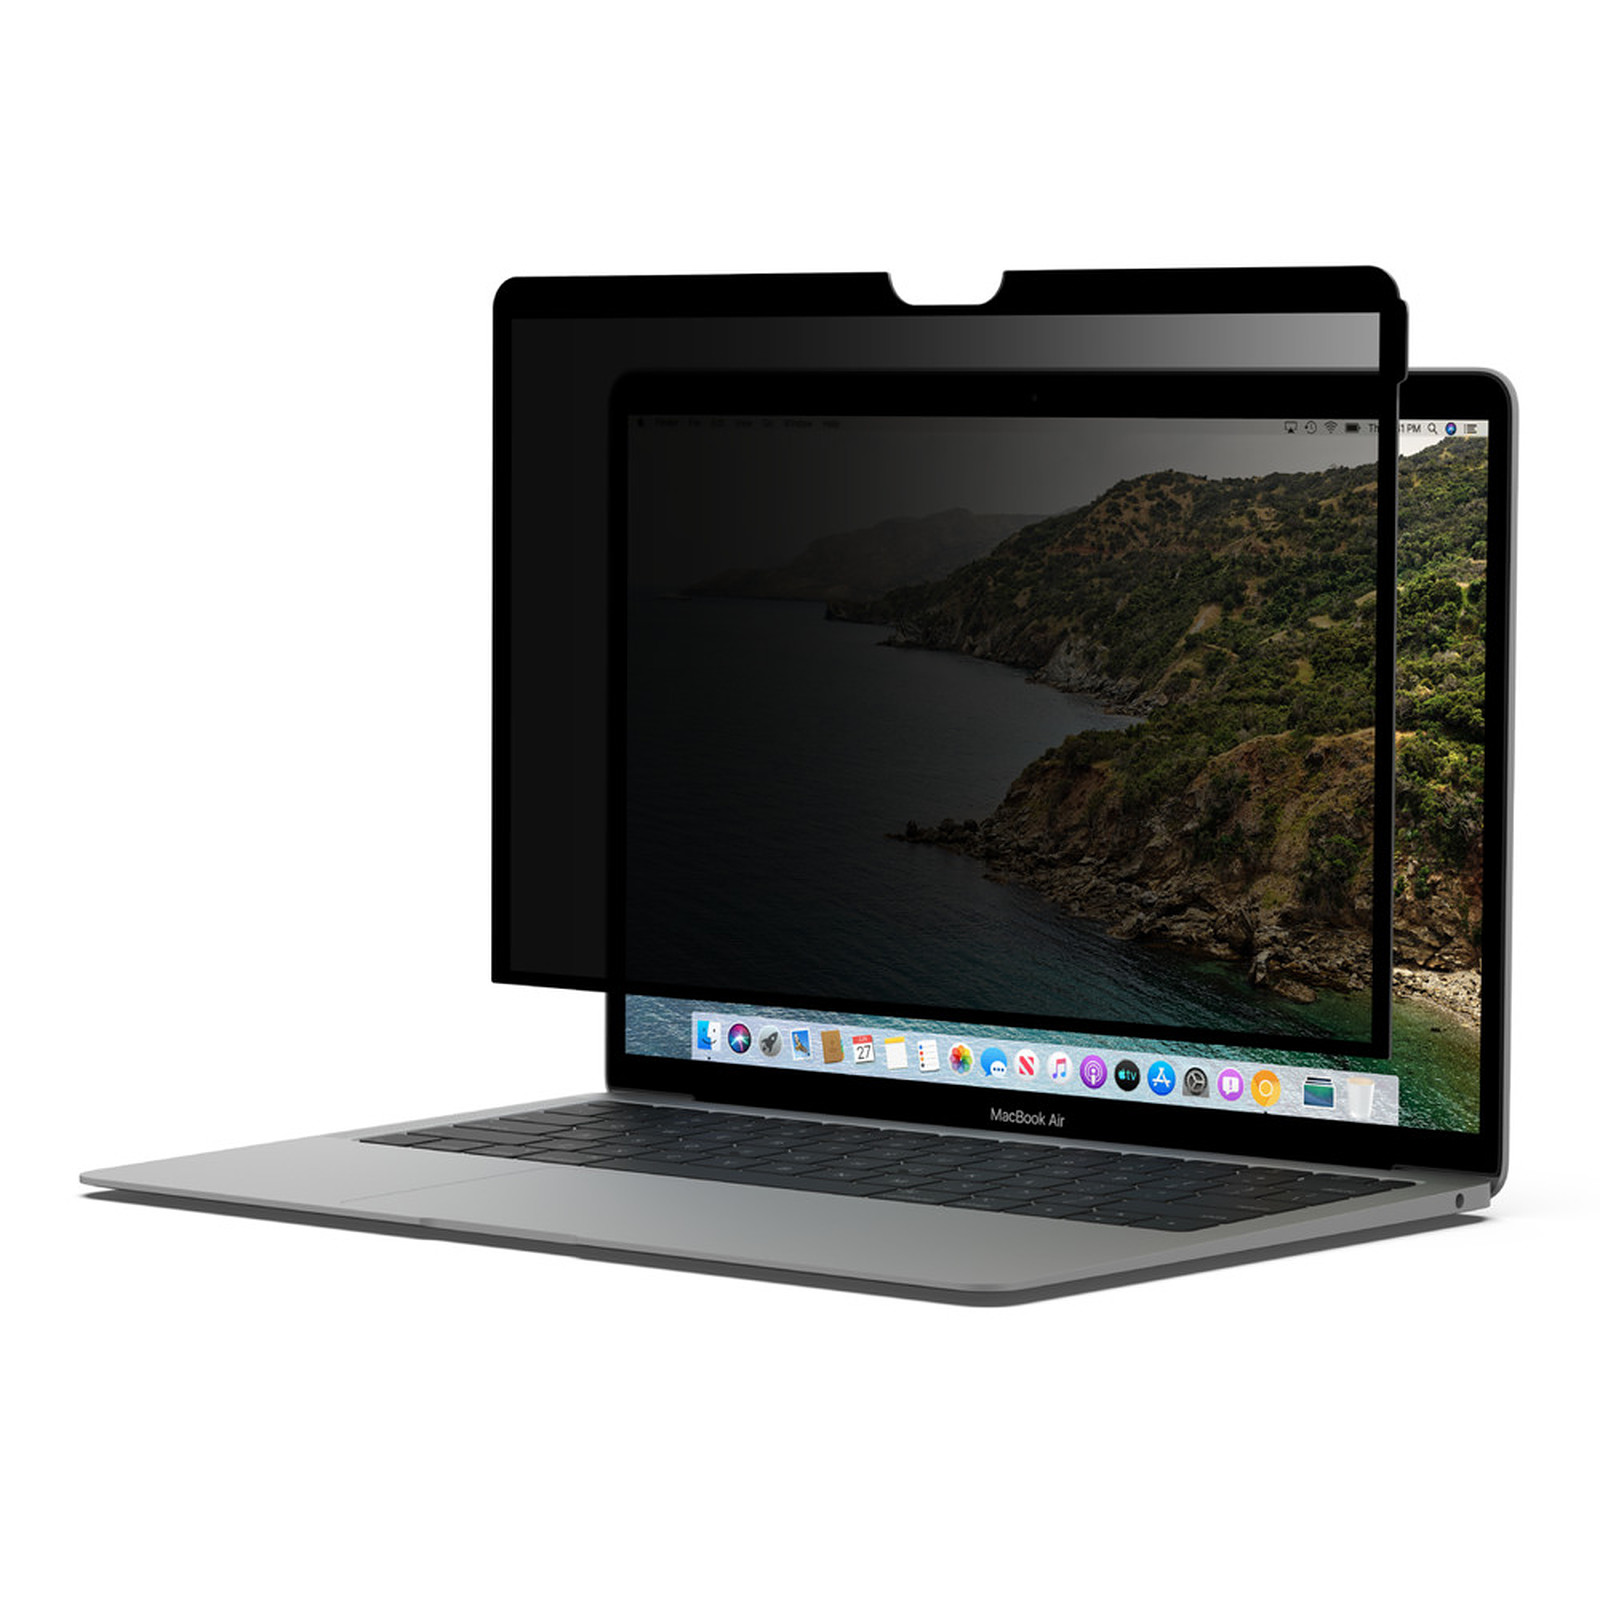 Belkin Ecran de protection/confidentialite pour MacBook Pro 15" amovible et reutilisable - Accessoires PC portable Belkin